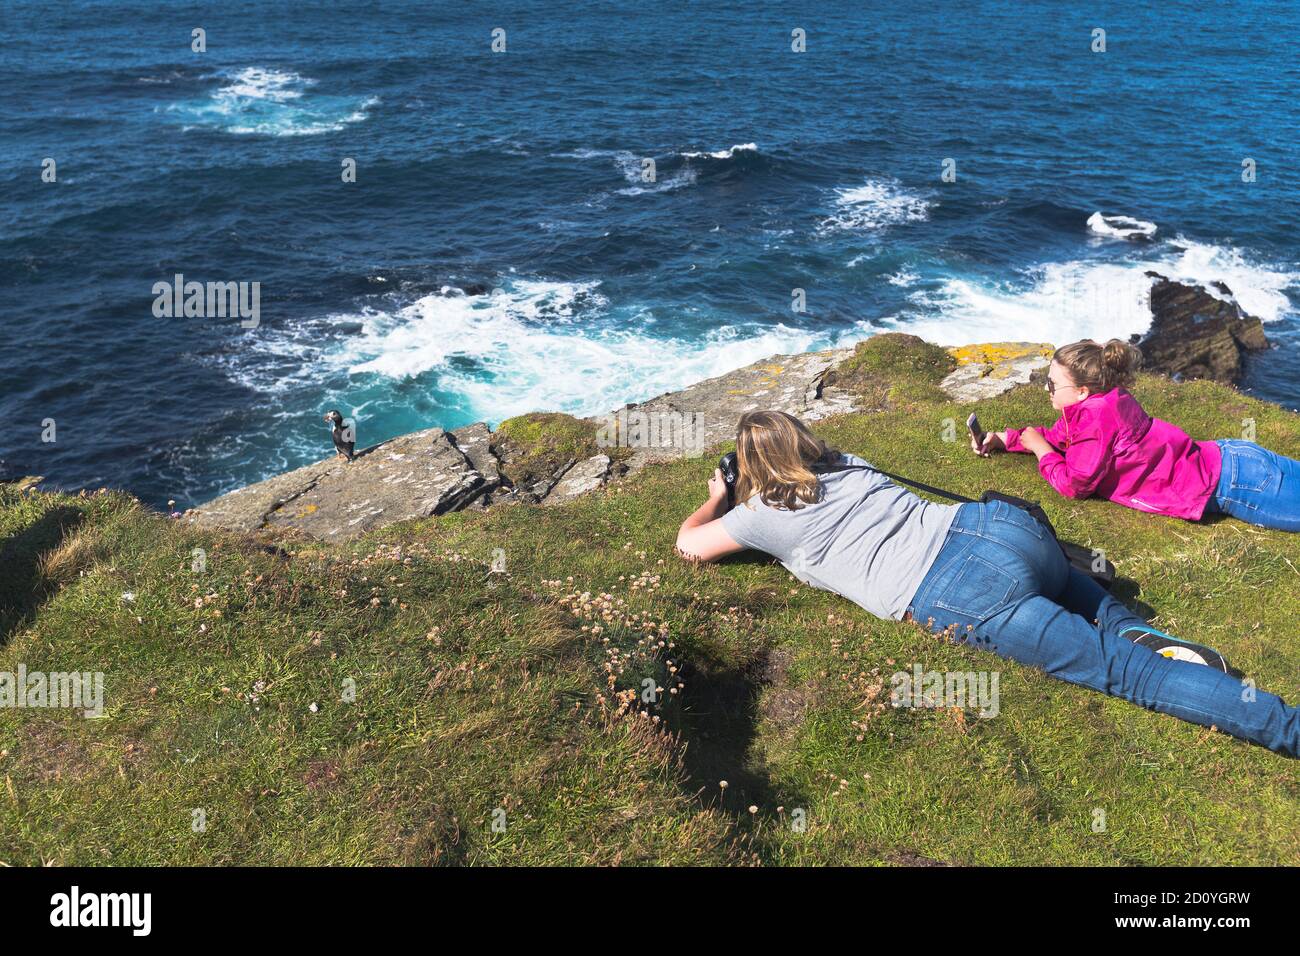 dh Brough di Birsay ORKNEY SCOZIA Puffin sulla cima della scogliera di famiglia turisti fotografando puffins due persone che guardano fratercola arctica Foto Stock